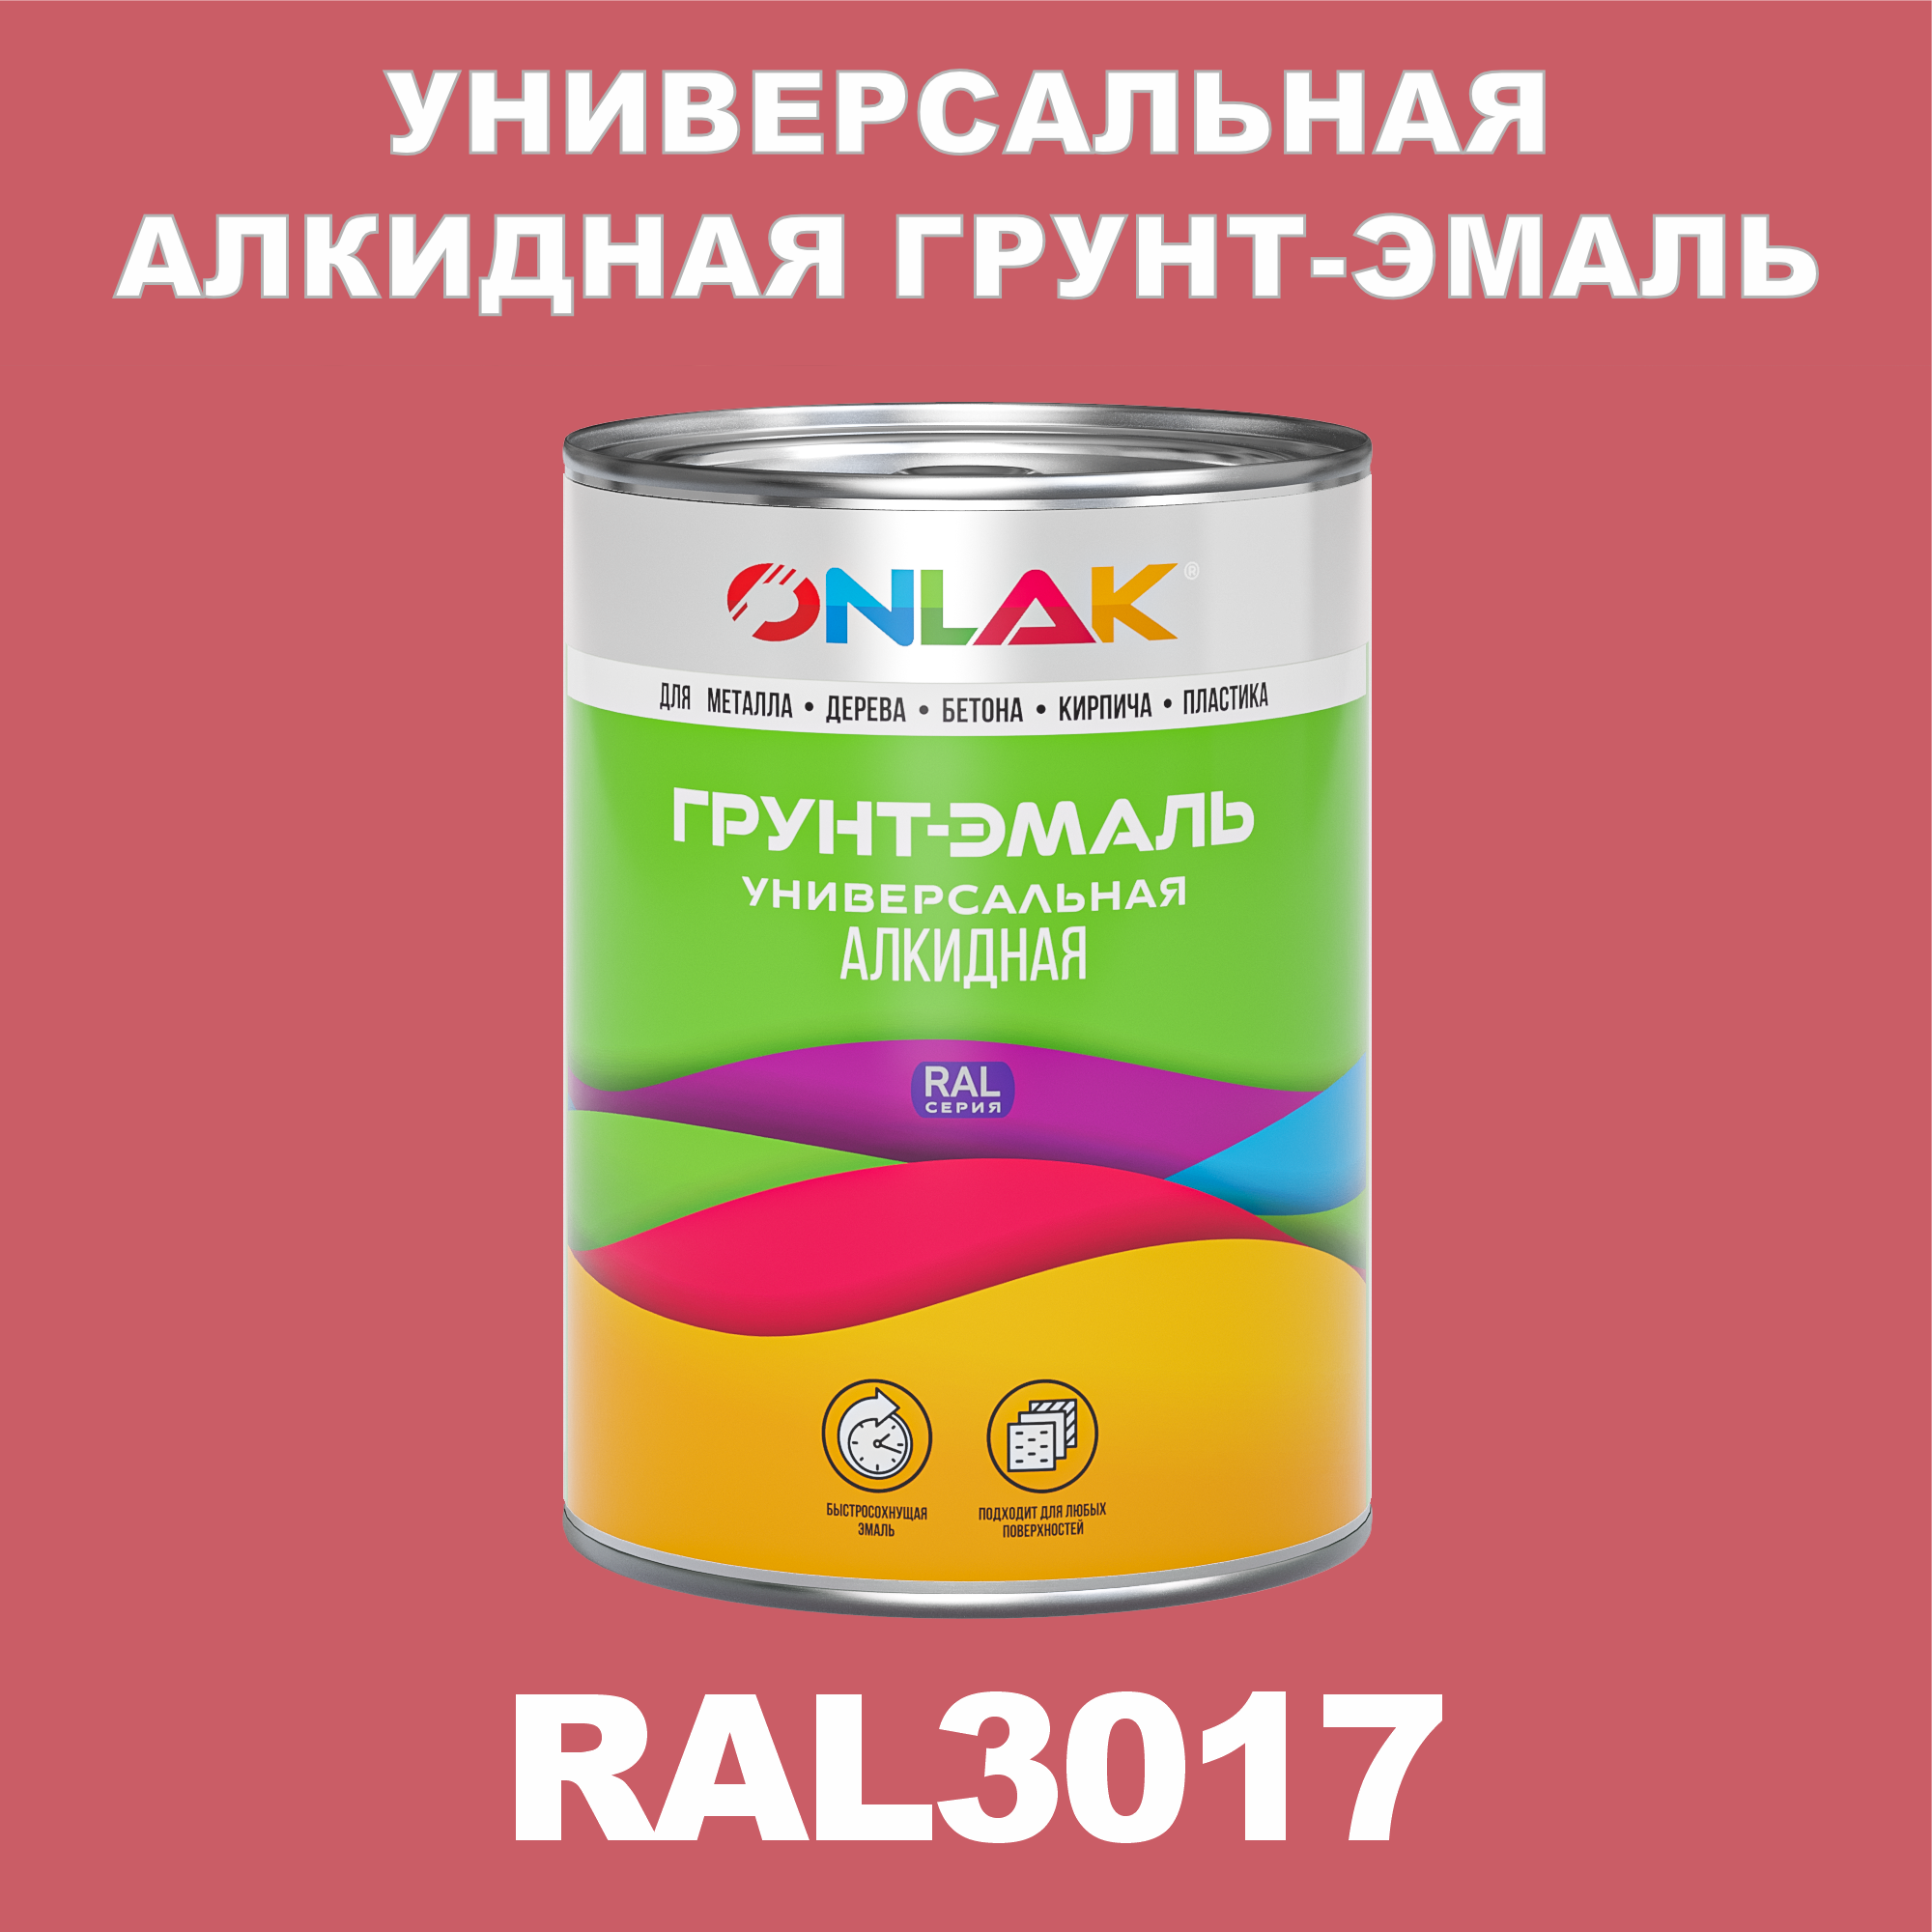 Грунт-эмаль ONLAK 1К RAL3017 антикоррозионная алкидная по металлу по ржавчине 1 кг